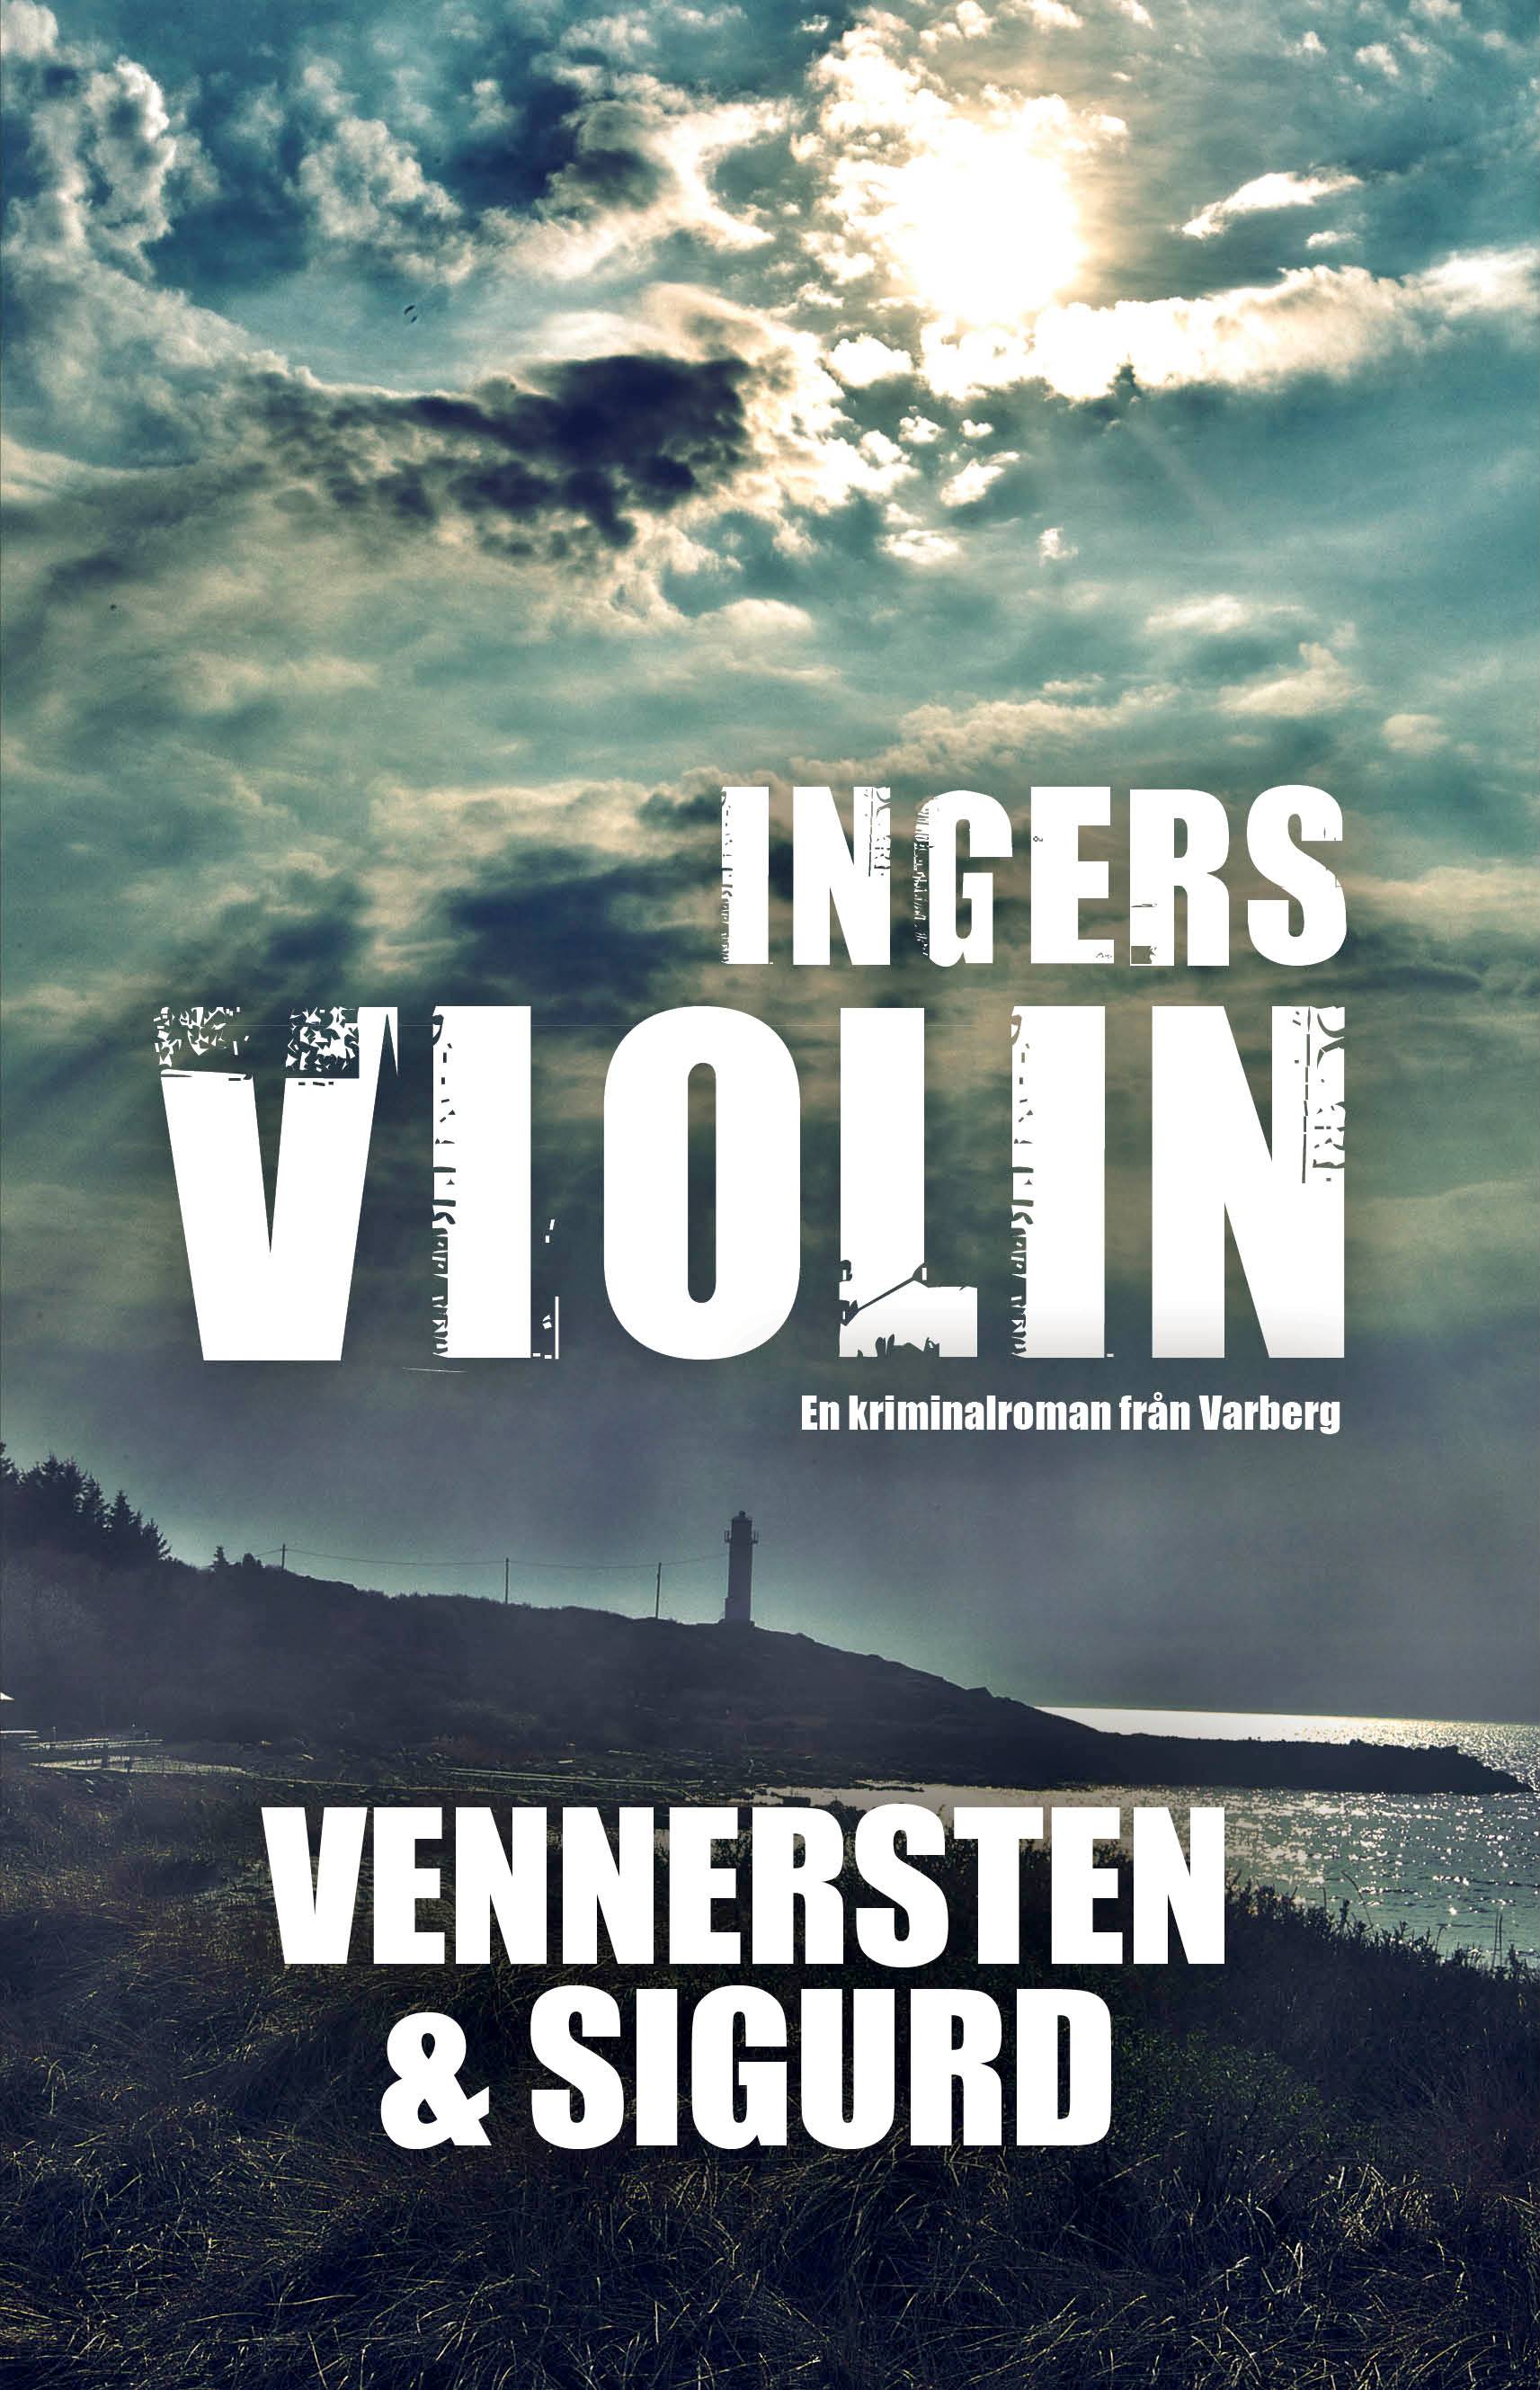 Ingers violin